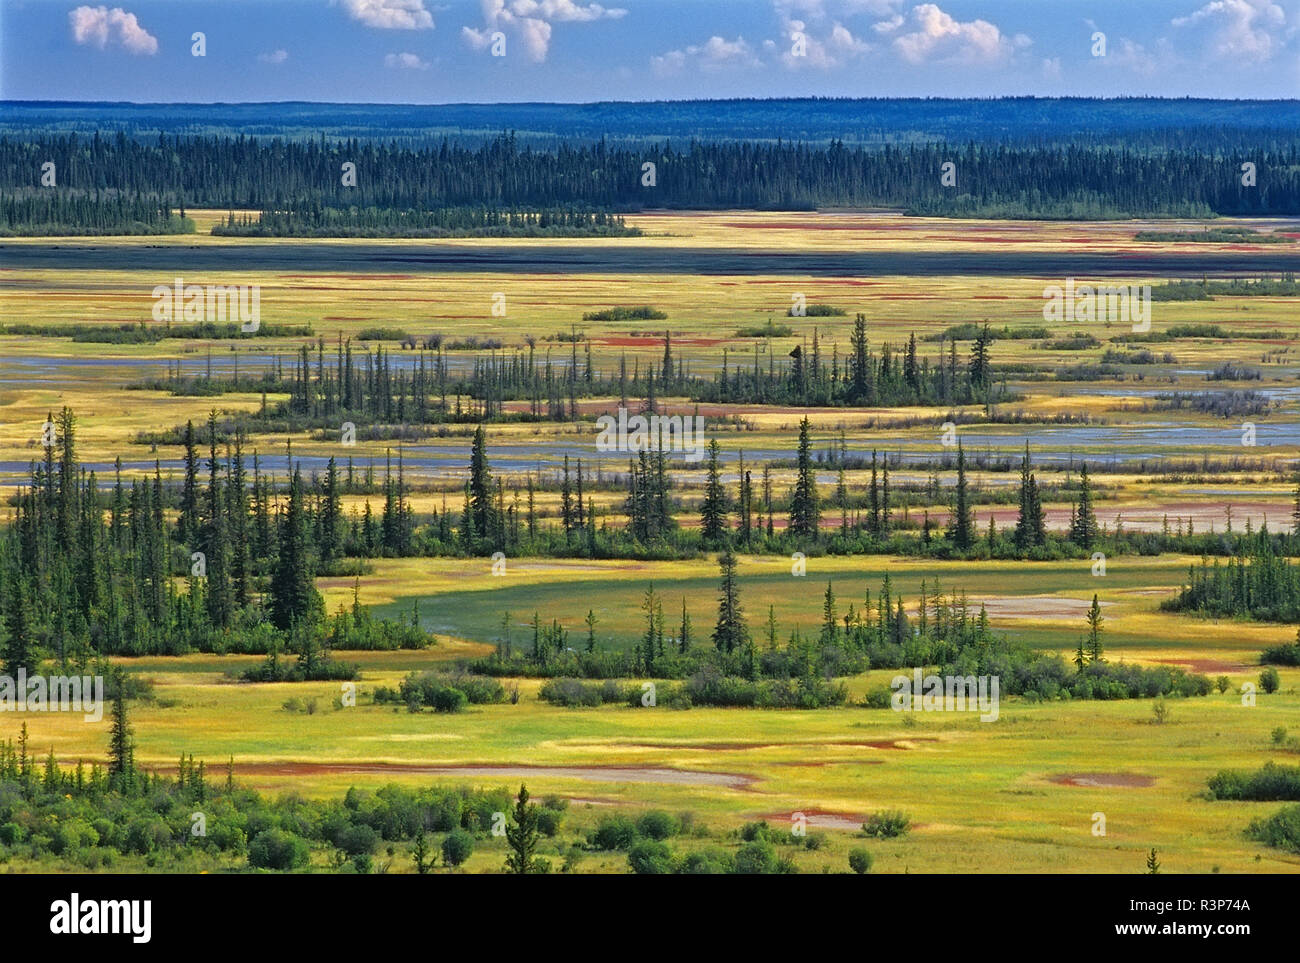 Le Canada, les Territoires du Nord-Ouest, le parc national Wood Buffalo. Paysage de forêt et plaine de sel. Banque D'Images